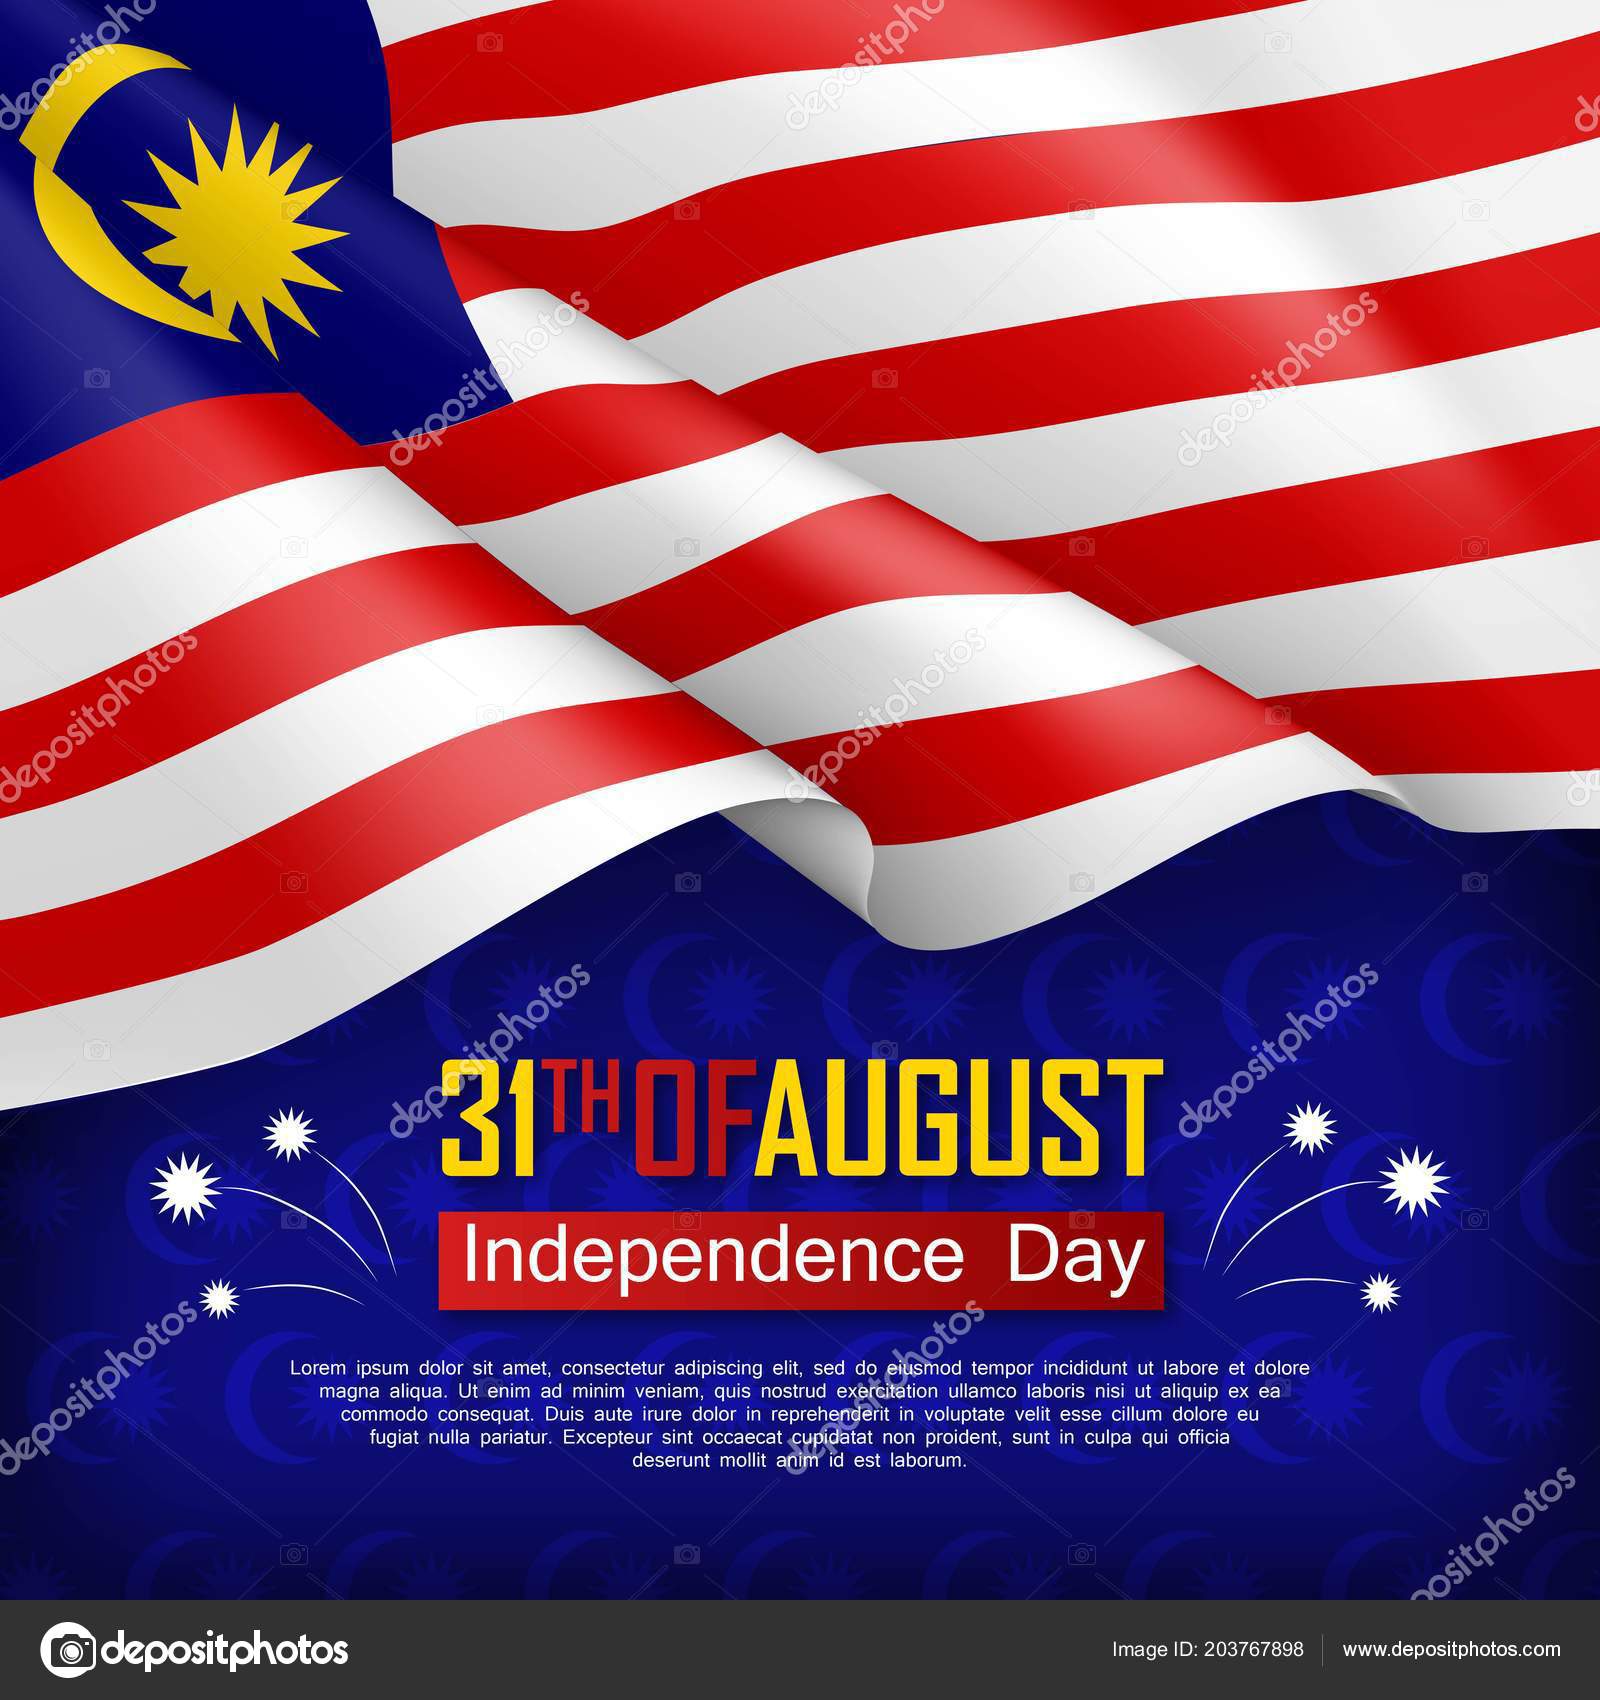 áˆ Malaysia Country Royalty Free Malaysia National Day Images Download On Depositphotos